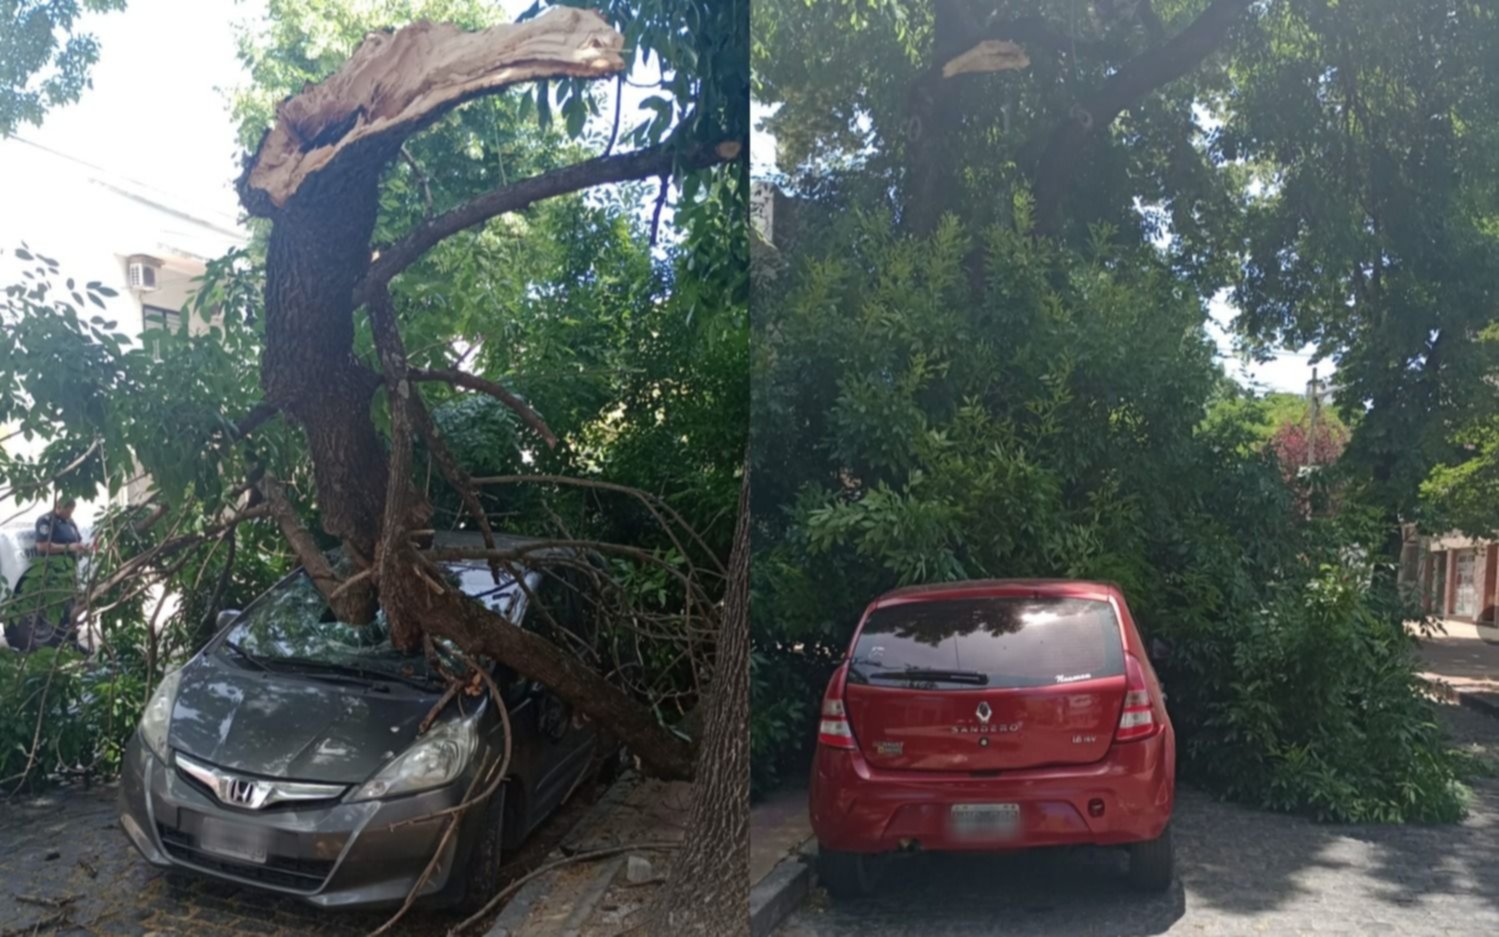 Cansados de reclamar, finalmente sucedió: se cayó un árbol en La Plata y casi provoca una tragedia